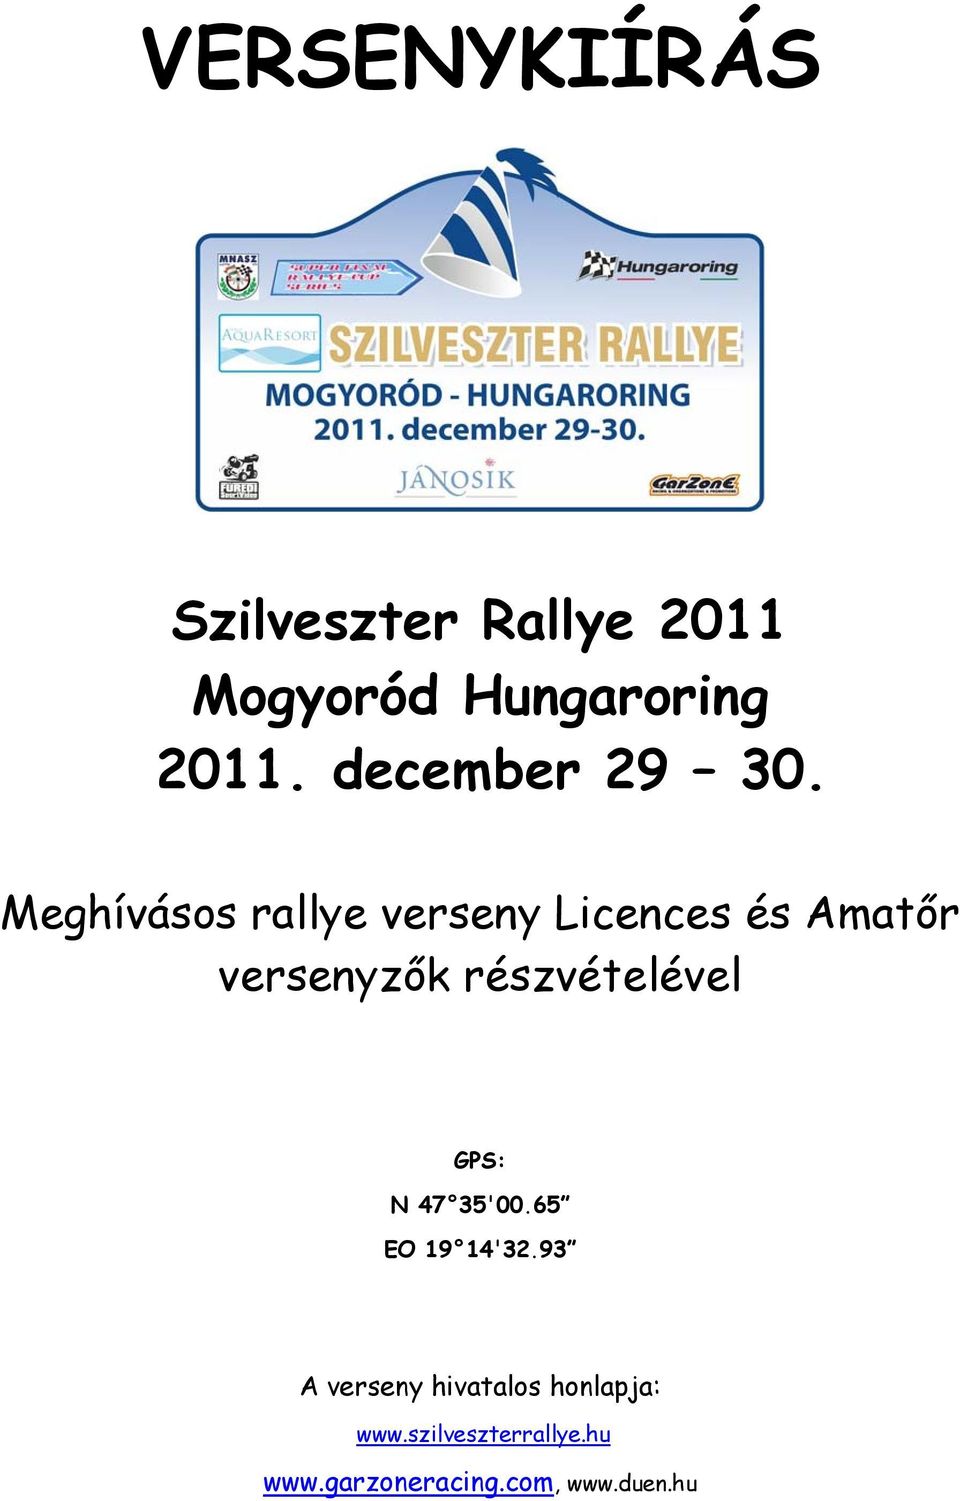 Meghívásos rallye verseny Licences és Amatőr versenyzők